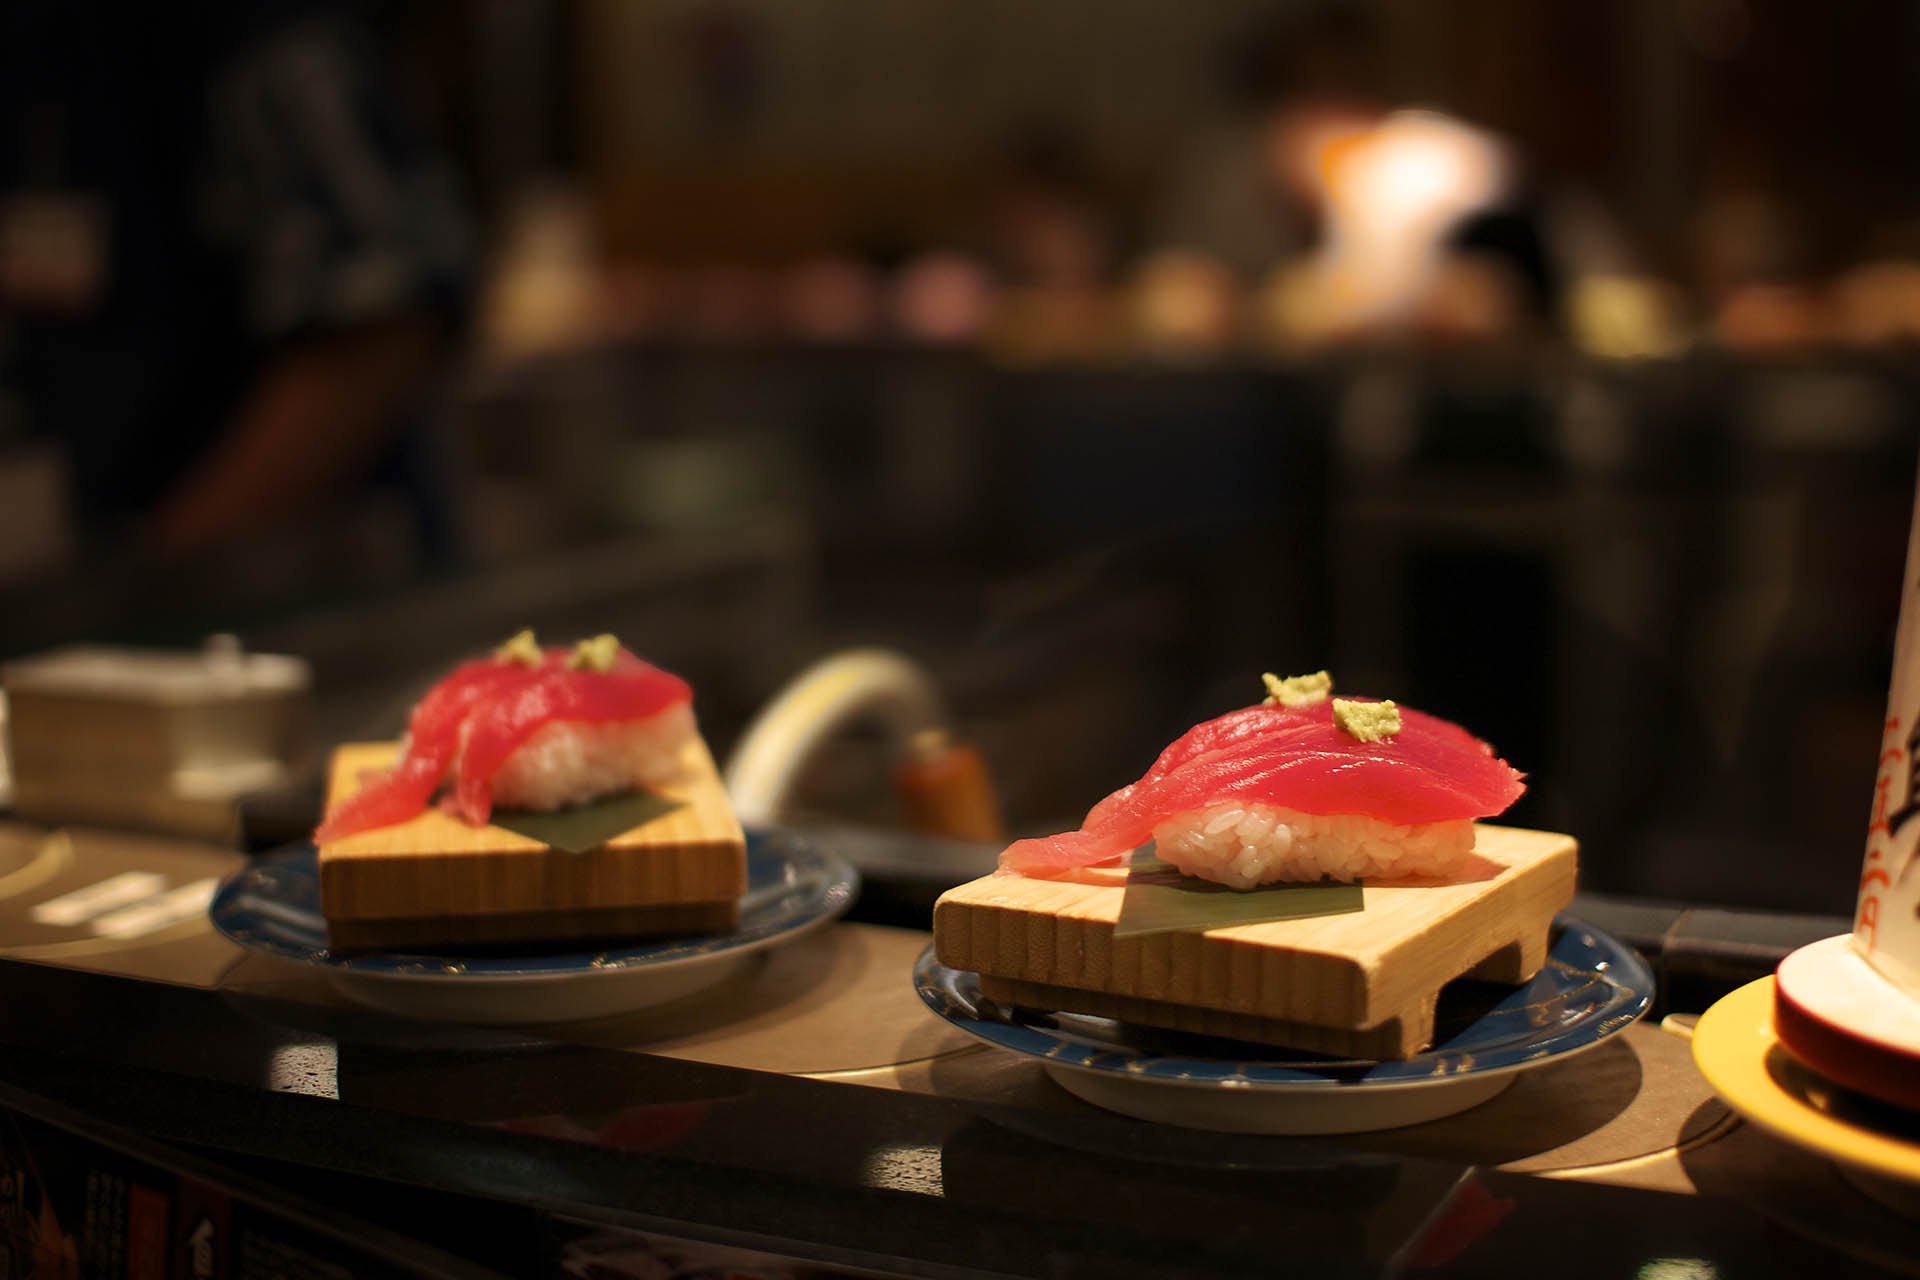 El sushi se realiza con pescados y mariscos crudos y esto puede, no solo elevar los niveles de sodio (sal), sino además una fuente de intoxicación, si se encuentran mal preparados
(Getty Images)